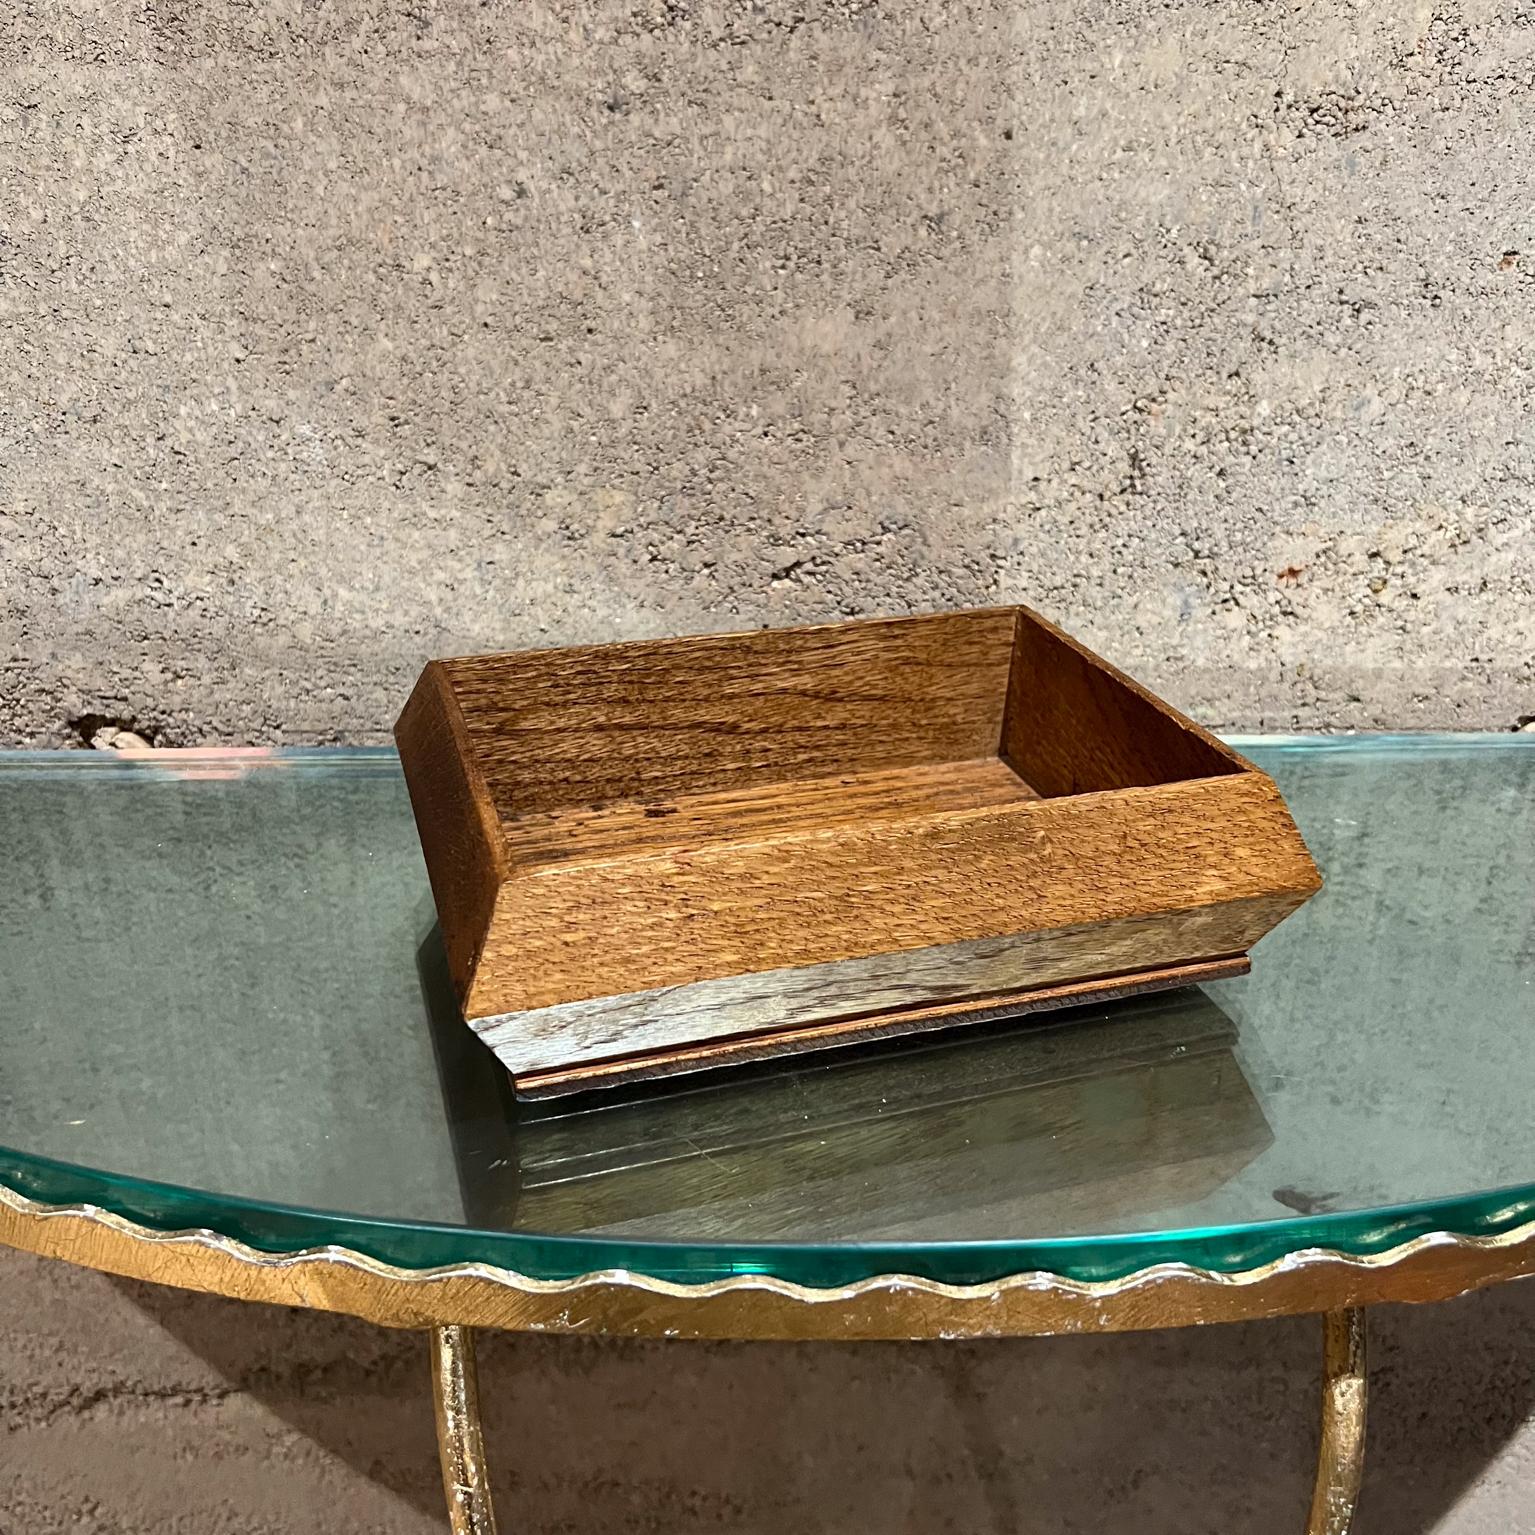 AMBIANIC präsentiert
Eichenholz Open Box File Vase Tray Dish
2 x 6 b x 8 lang
Preowned Vintage unrestauriert Zustand, siehe Bilder zur Verfügung gestellt.